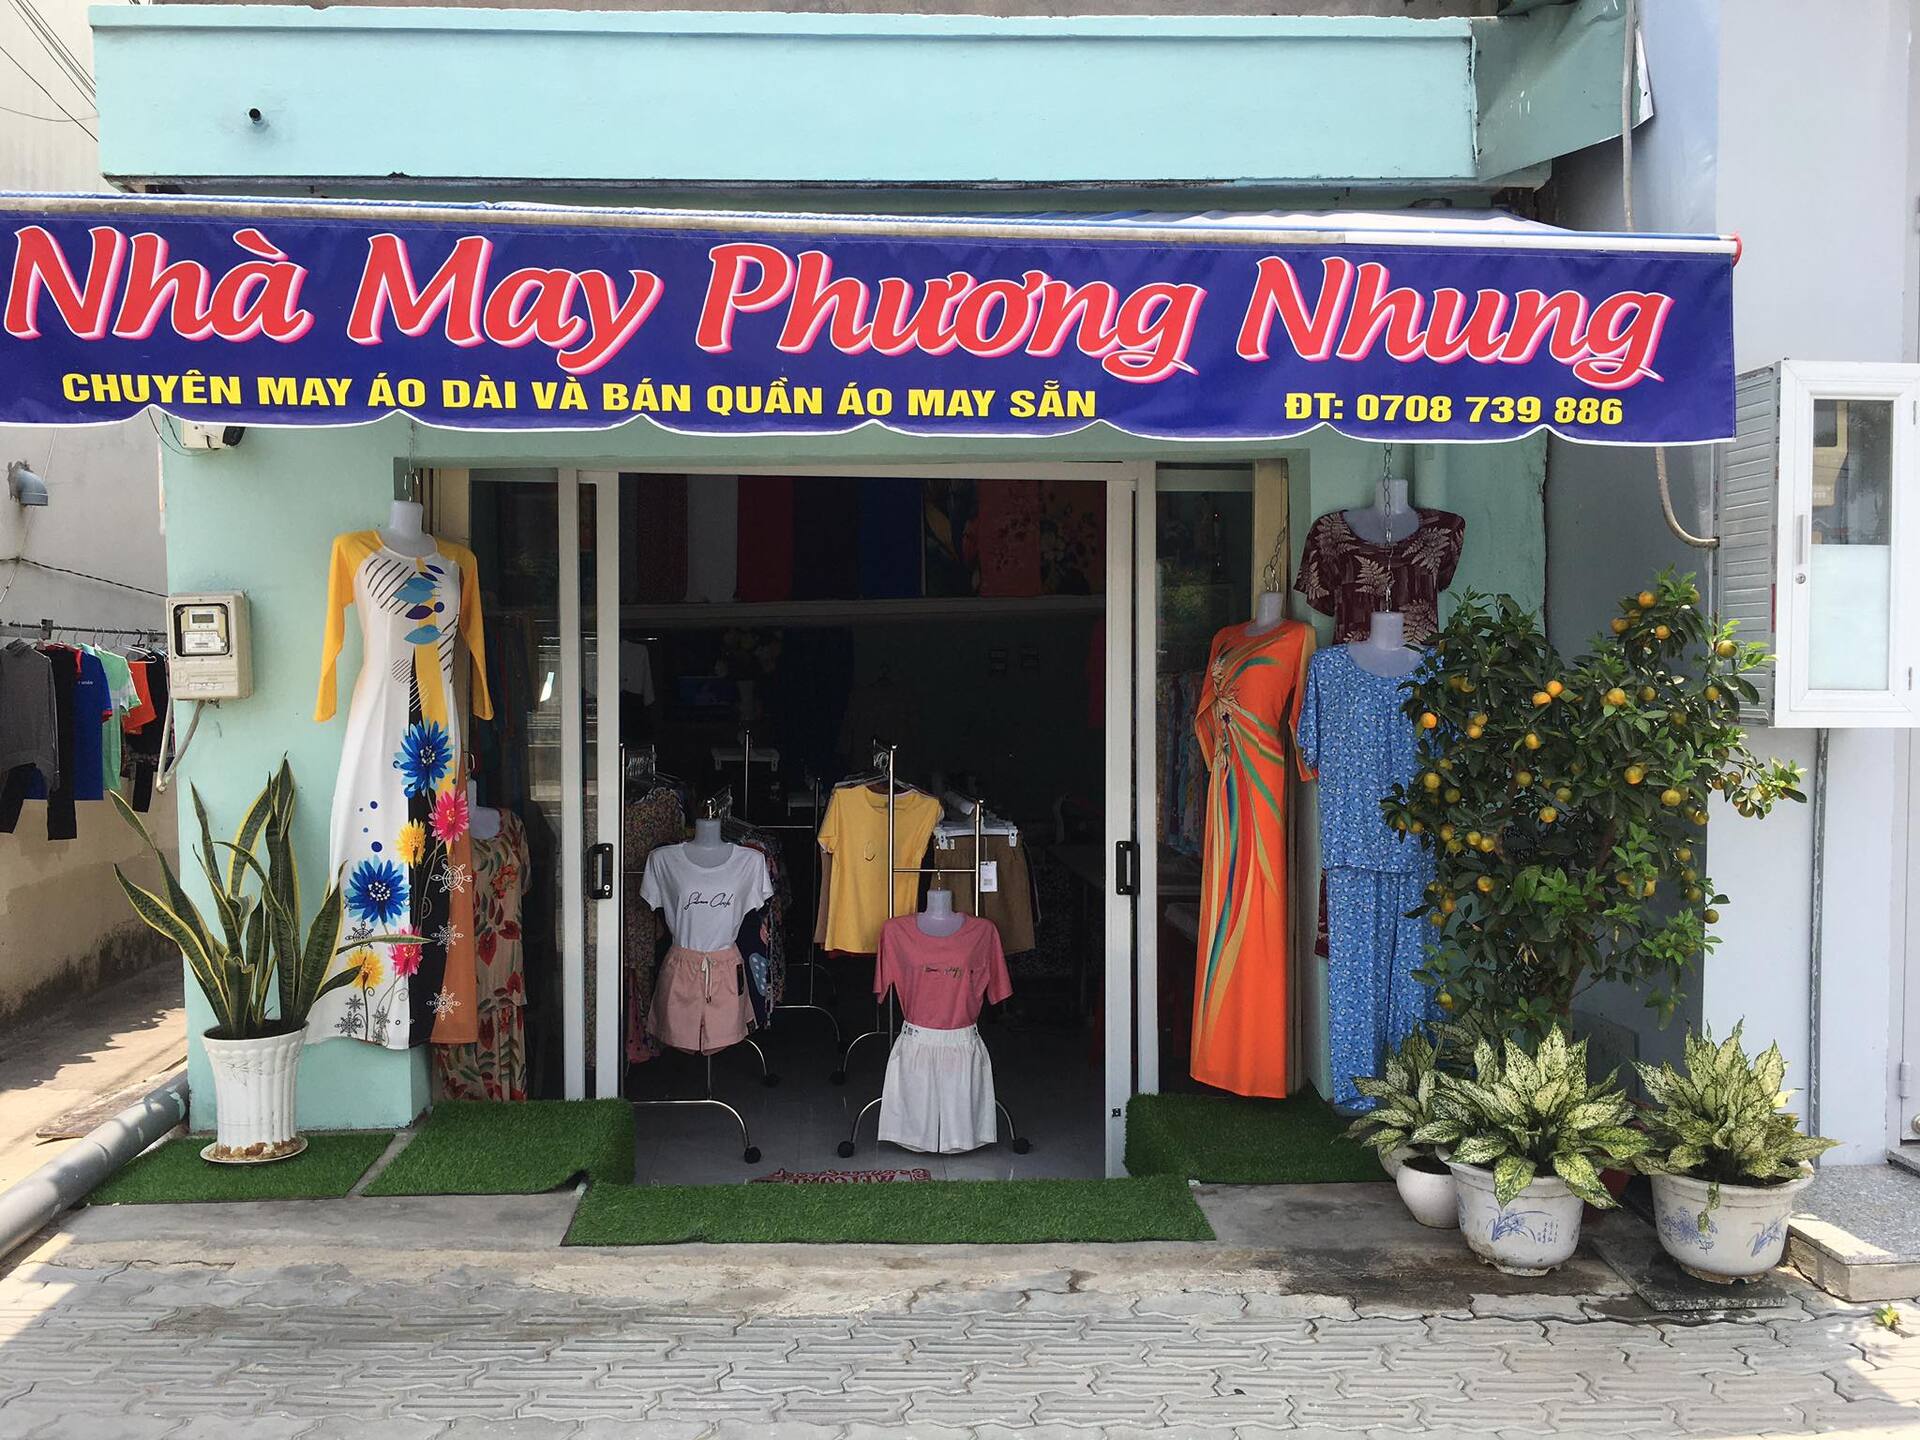 アオザイのオーダーメイド店 ”Phuong Nhung”